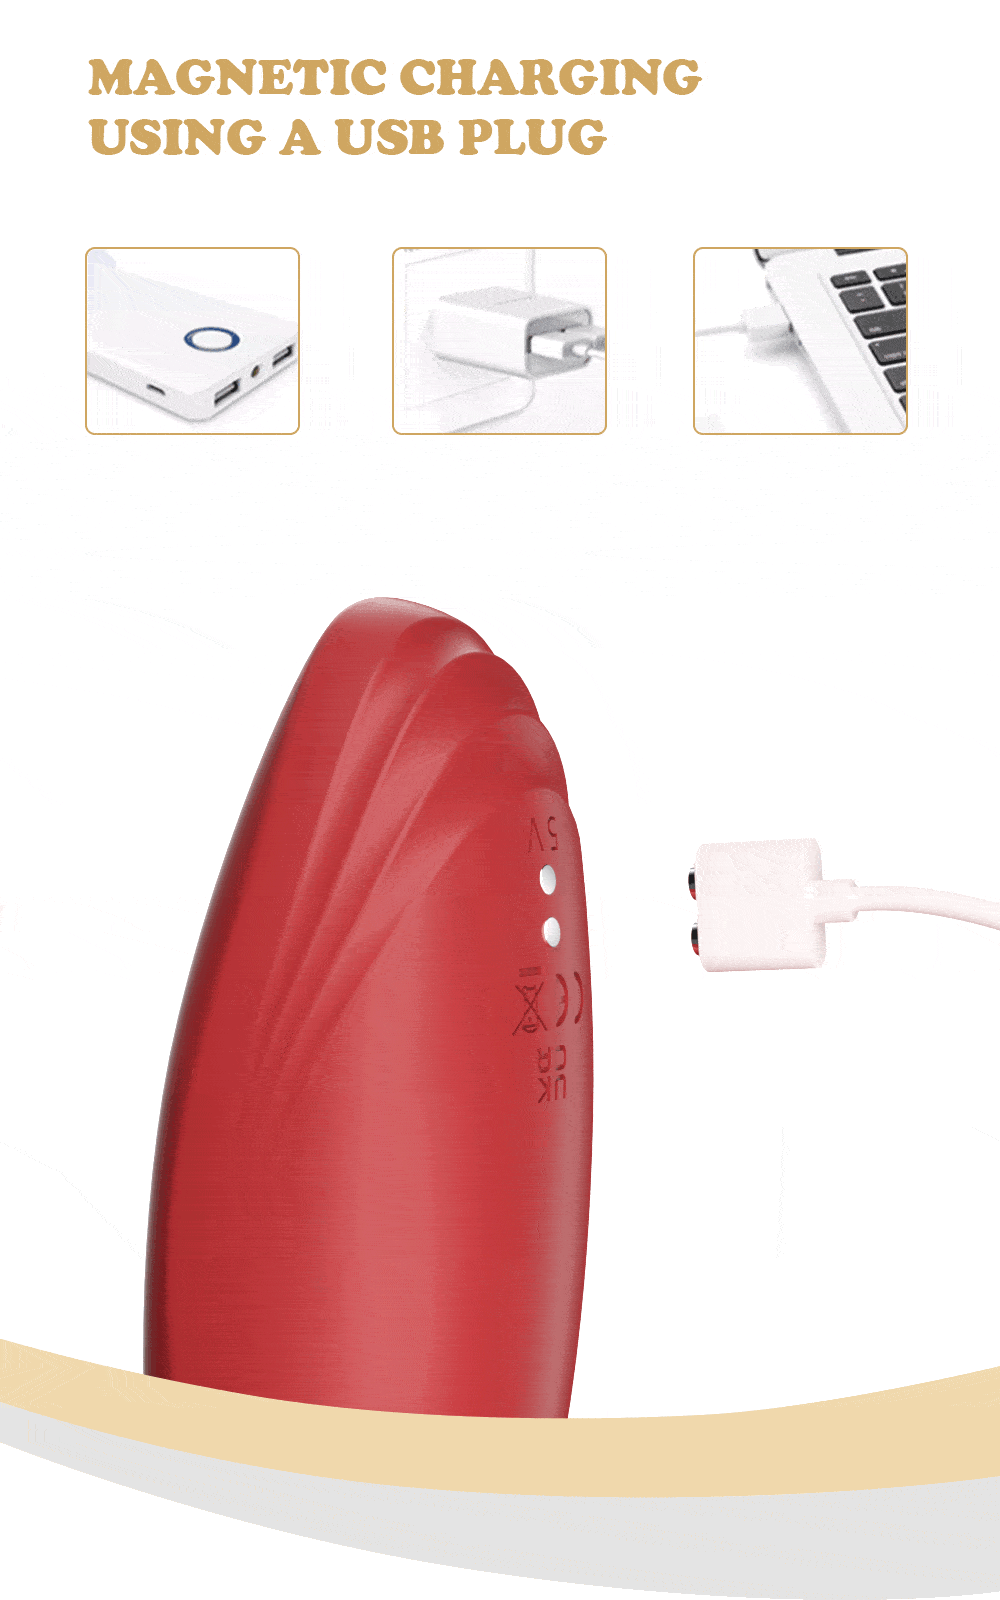 tunga slickande vibrator magnetisk laddning med hjälp av en USB-kontakt